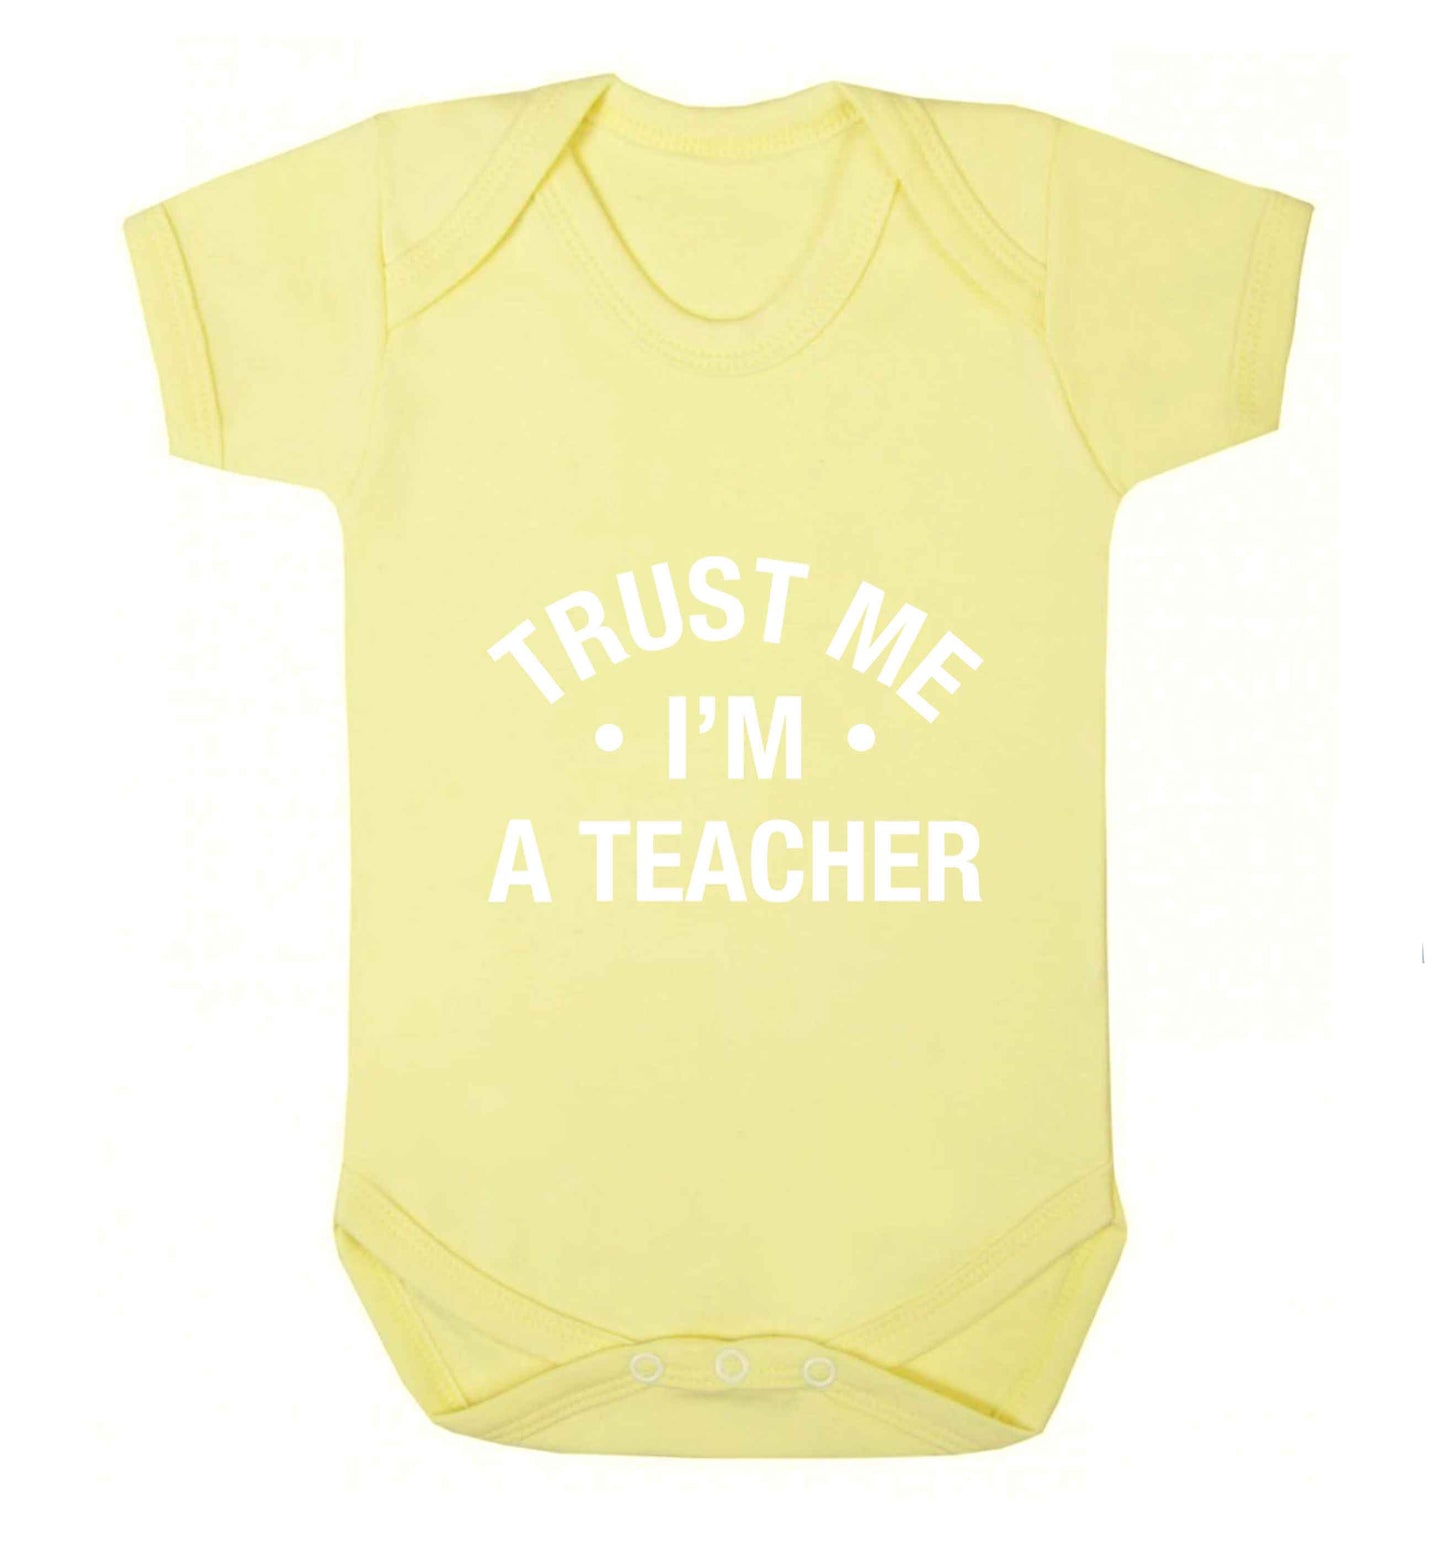 Trust me I'm a teacher baby vest pale yellow 18-24 months